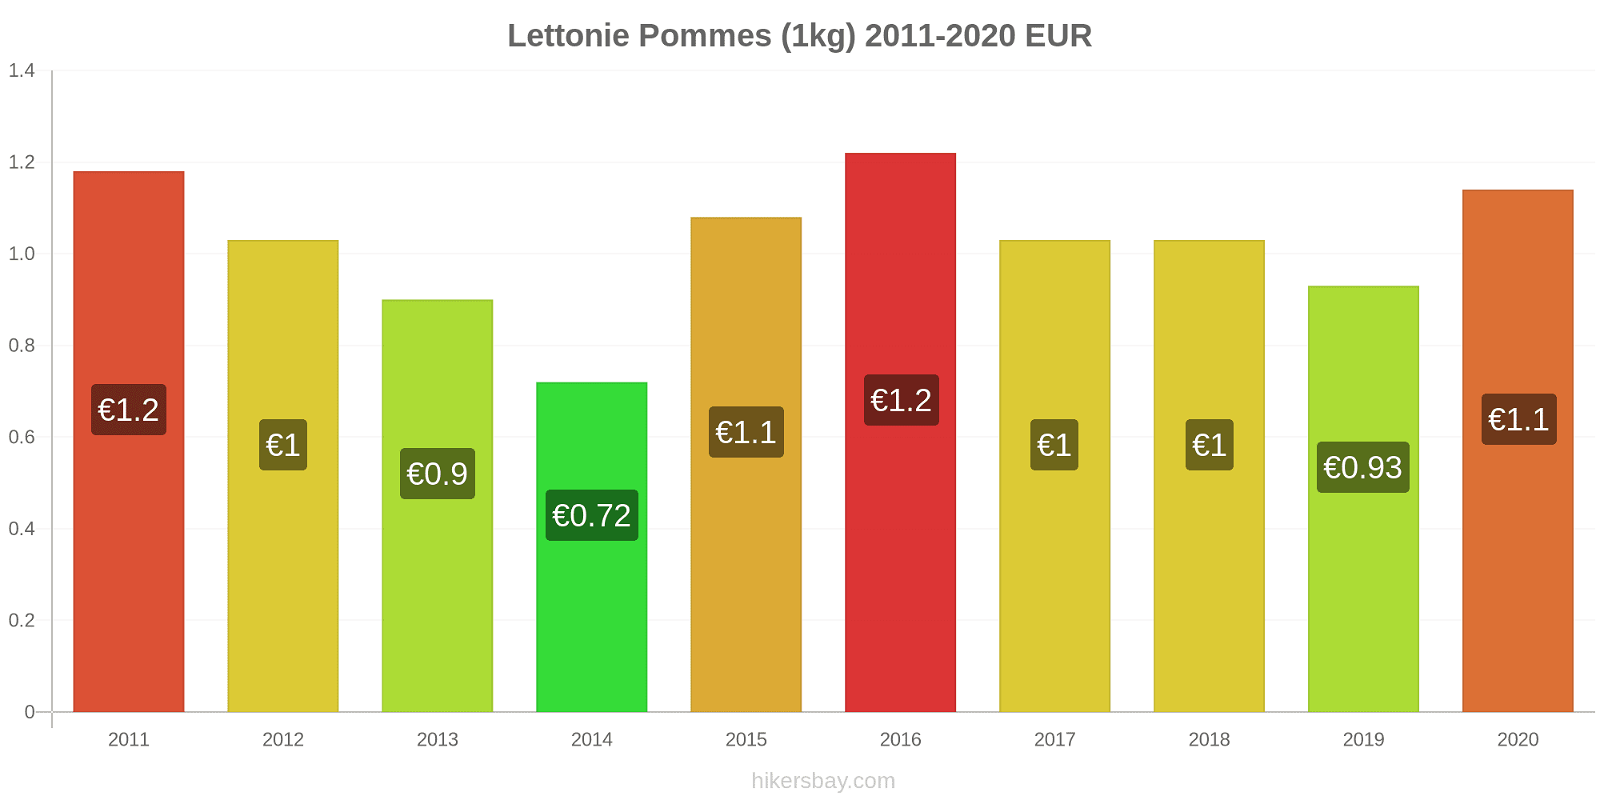 Lettonie changements de prix Pommes (1kg) hikersbay.com